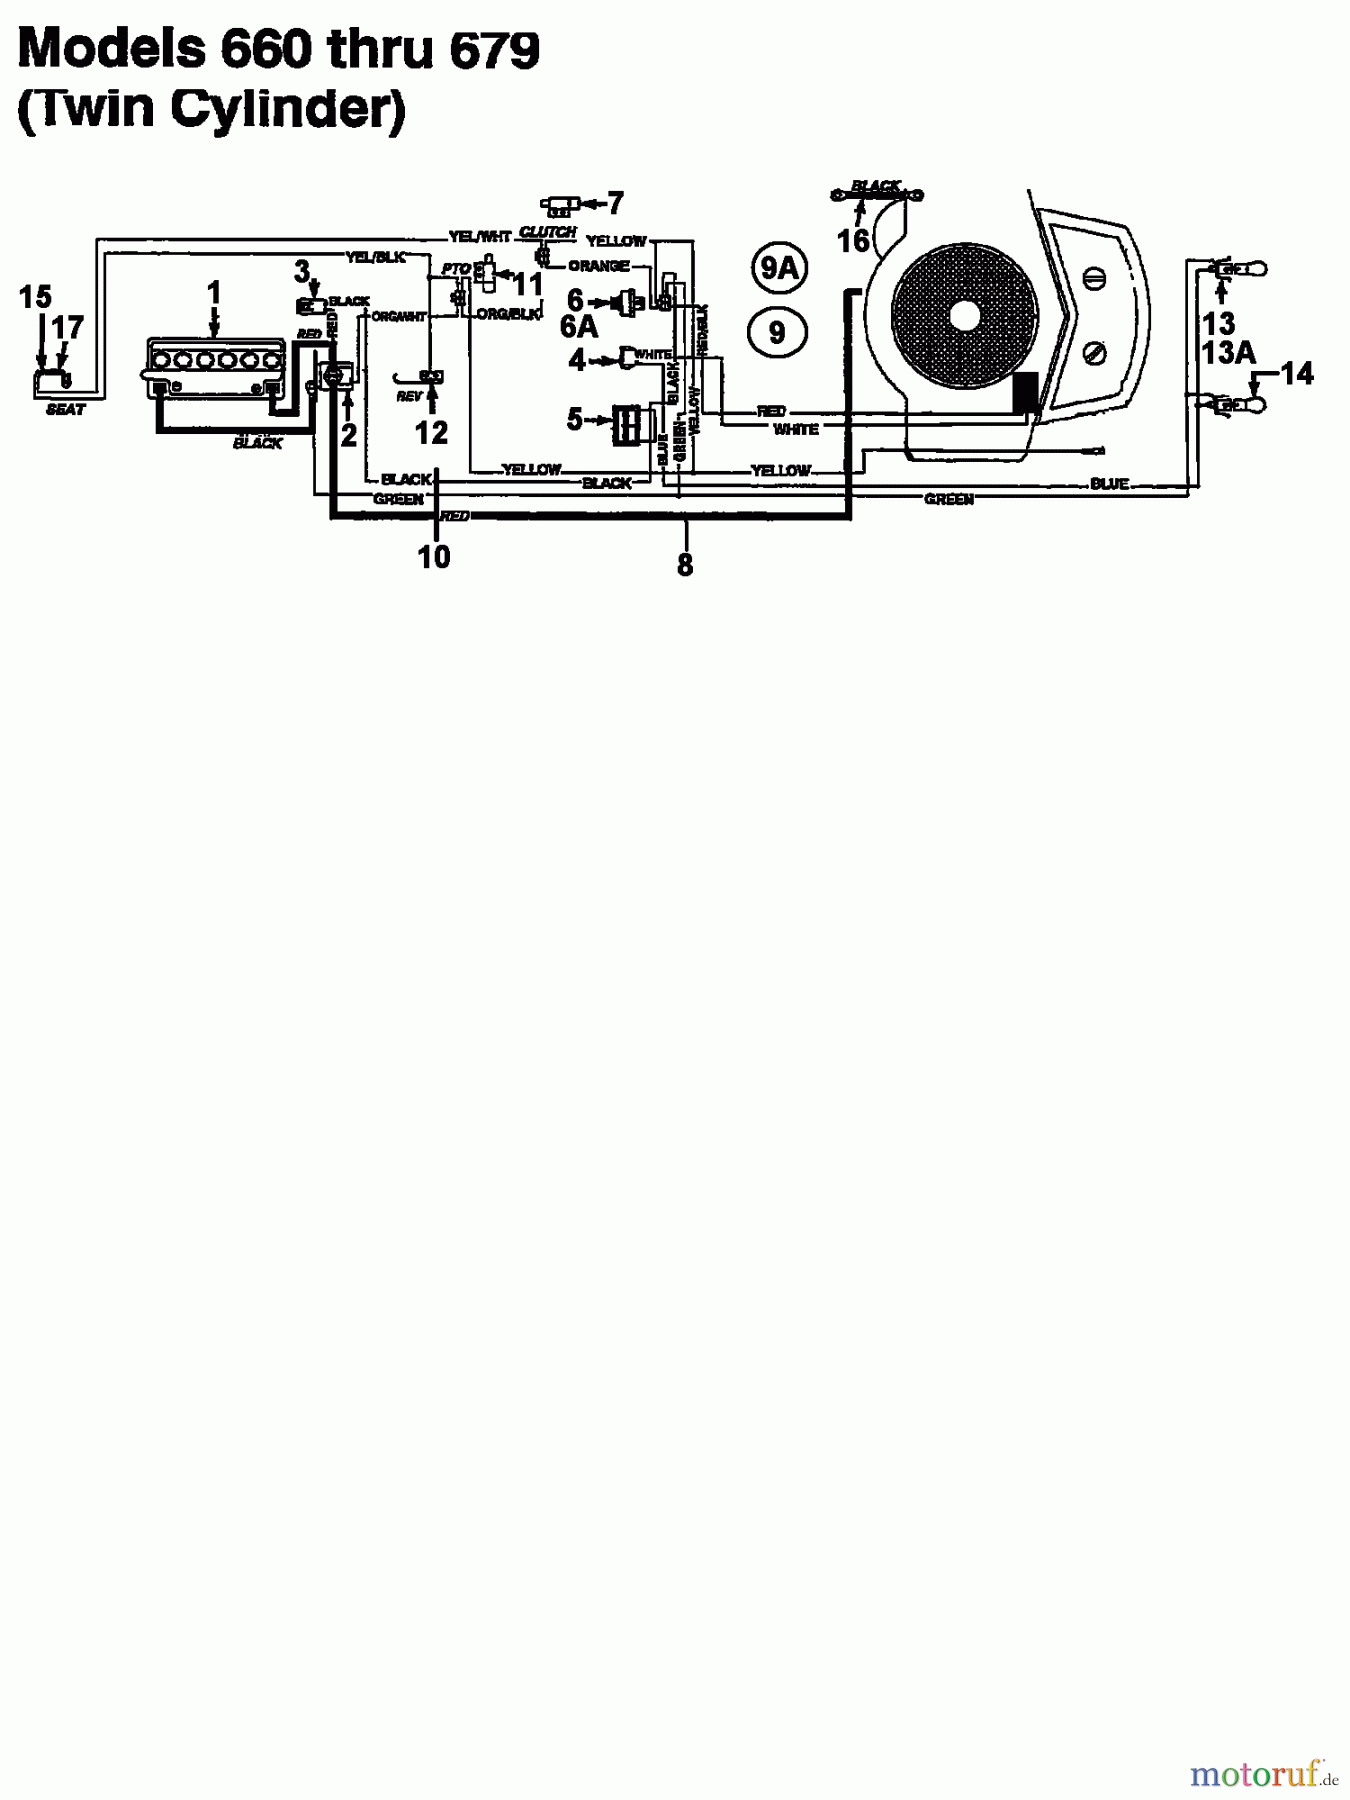  Raiffeisen Rasentraktoren 112 ESL 133I670F628  (1993) Schaltplan 2 Zylinder